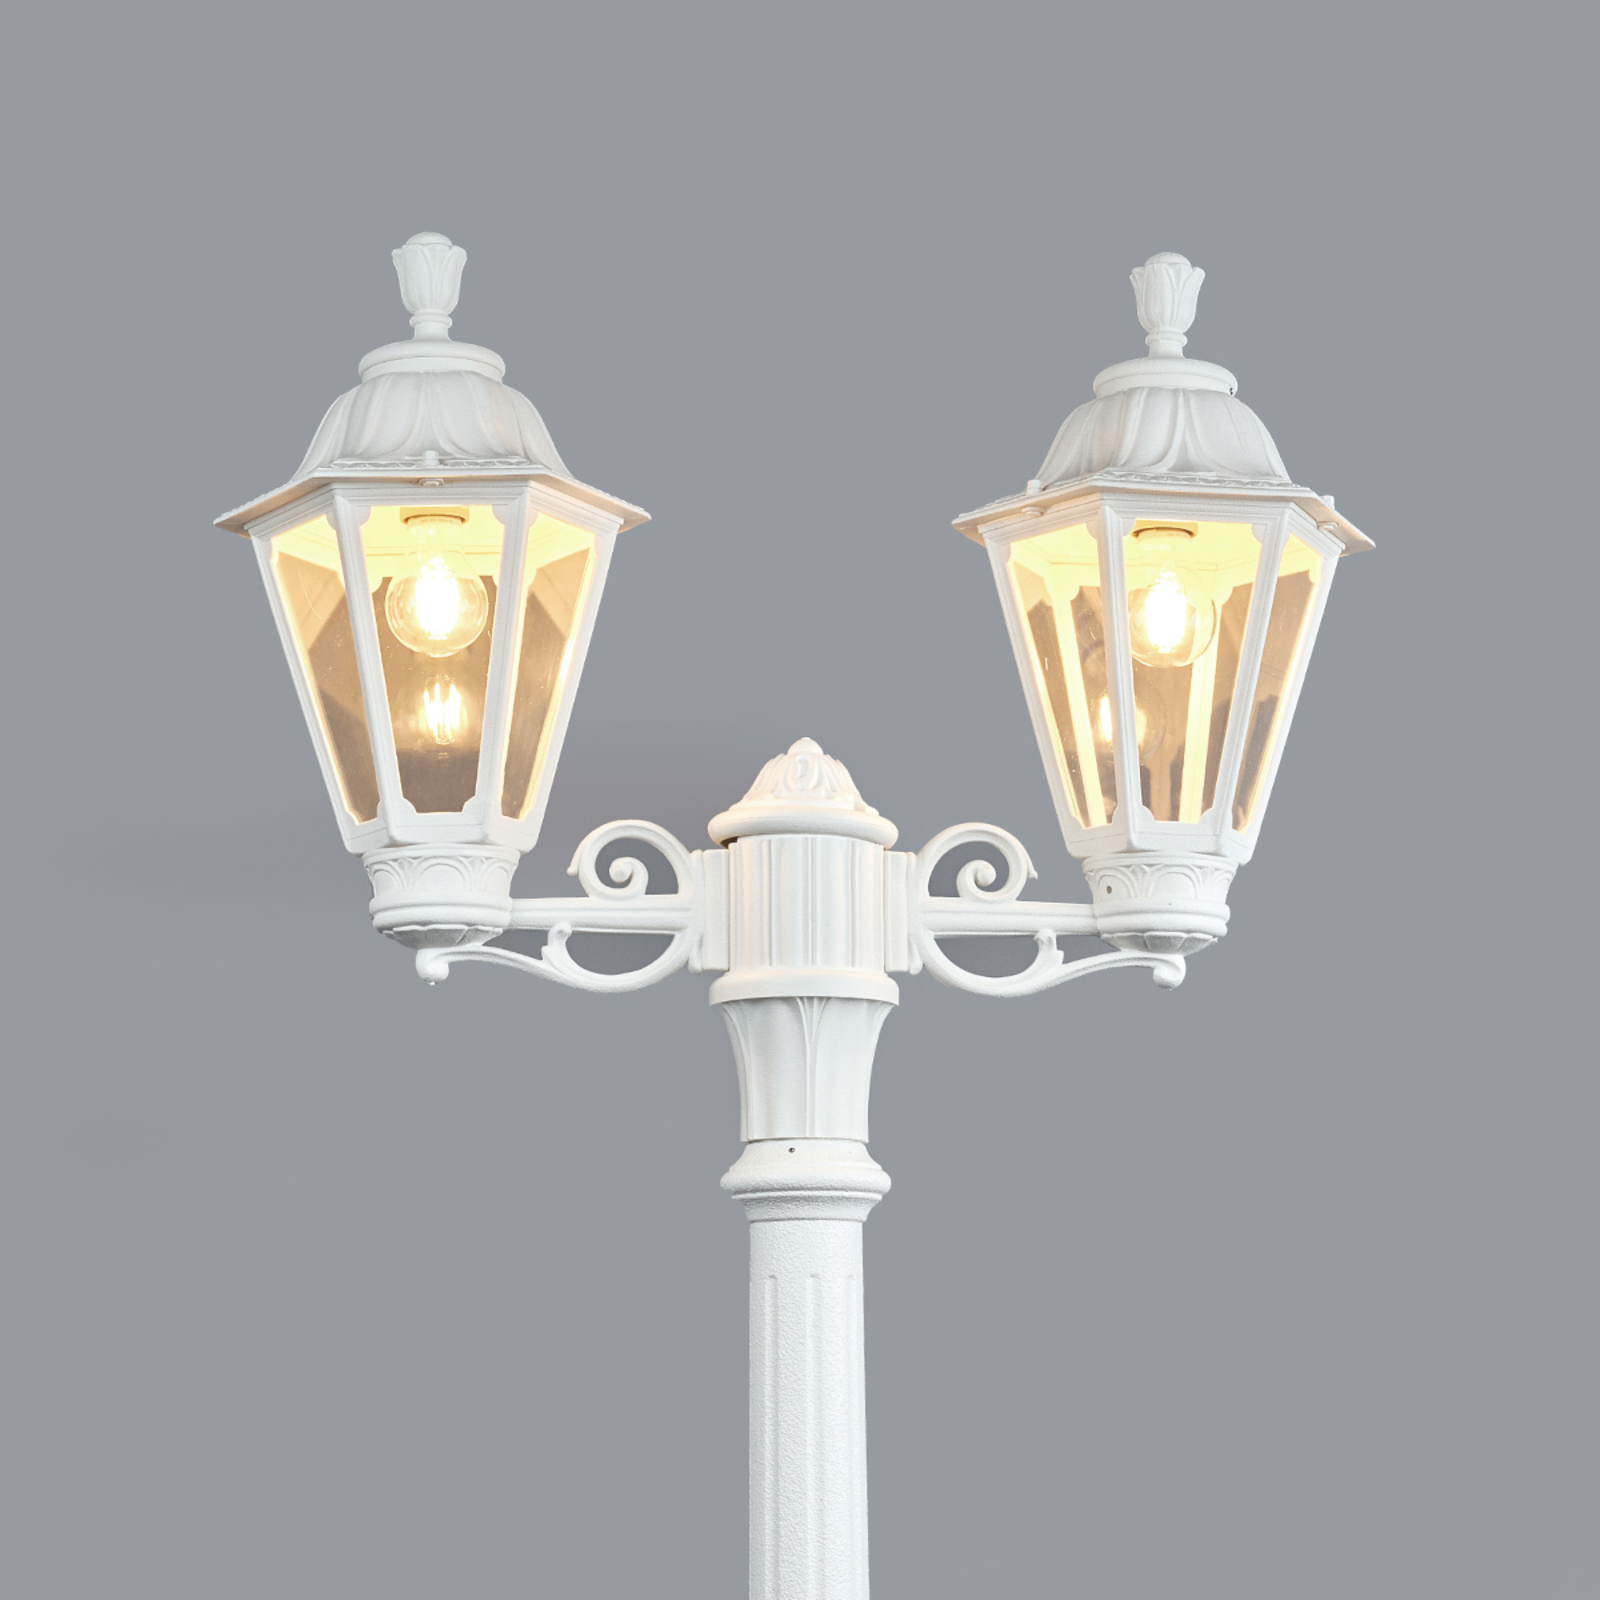 LED stulpų šviestuvas "Artu Rut" 2 lemputės E27 baltos spalvos